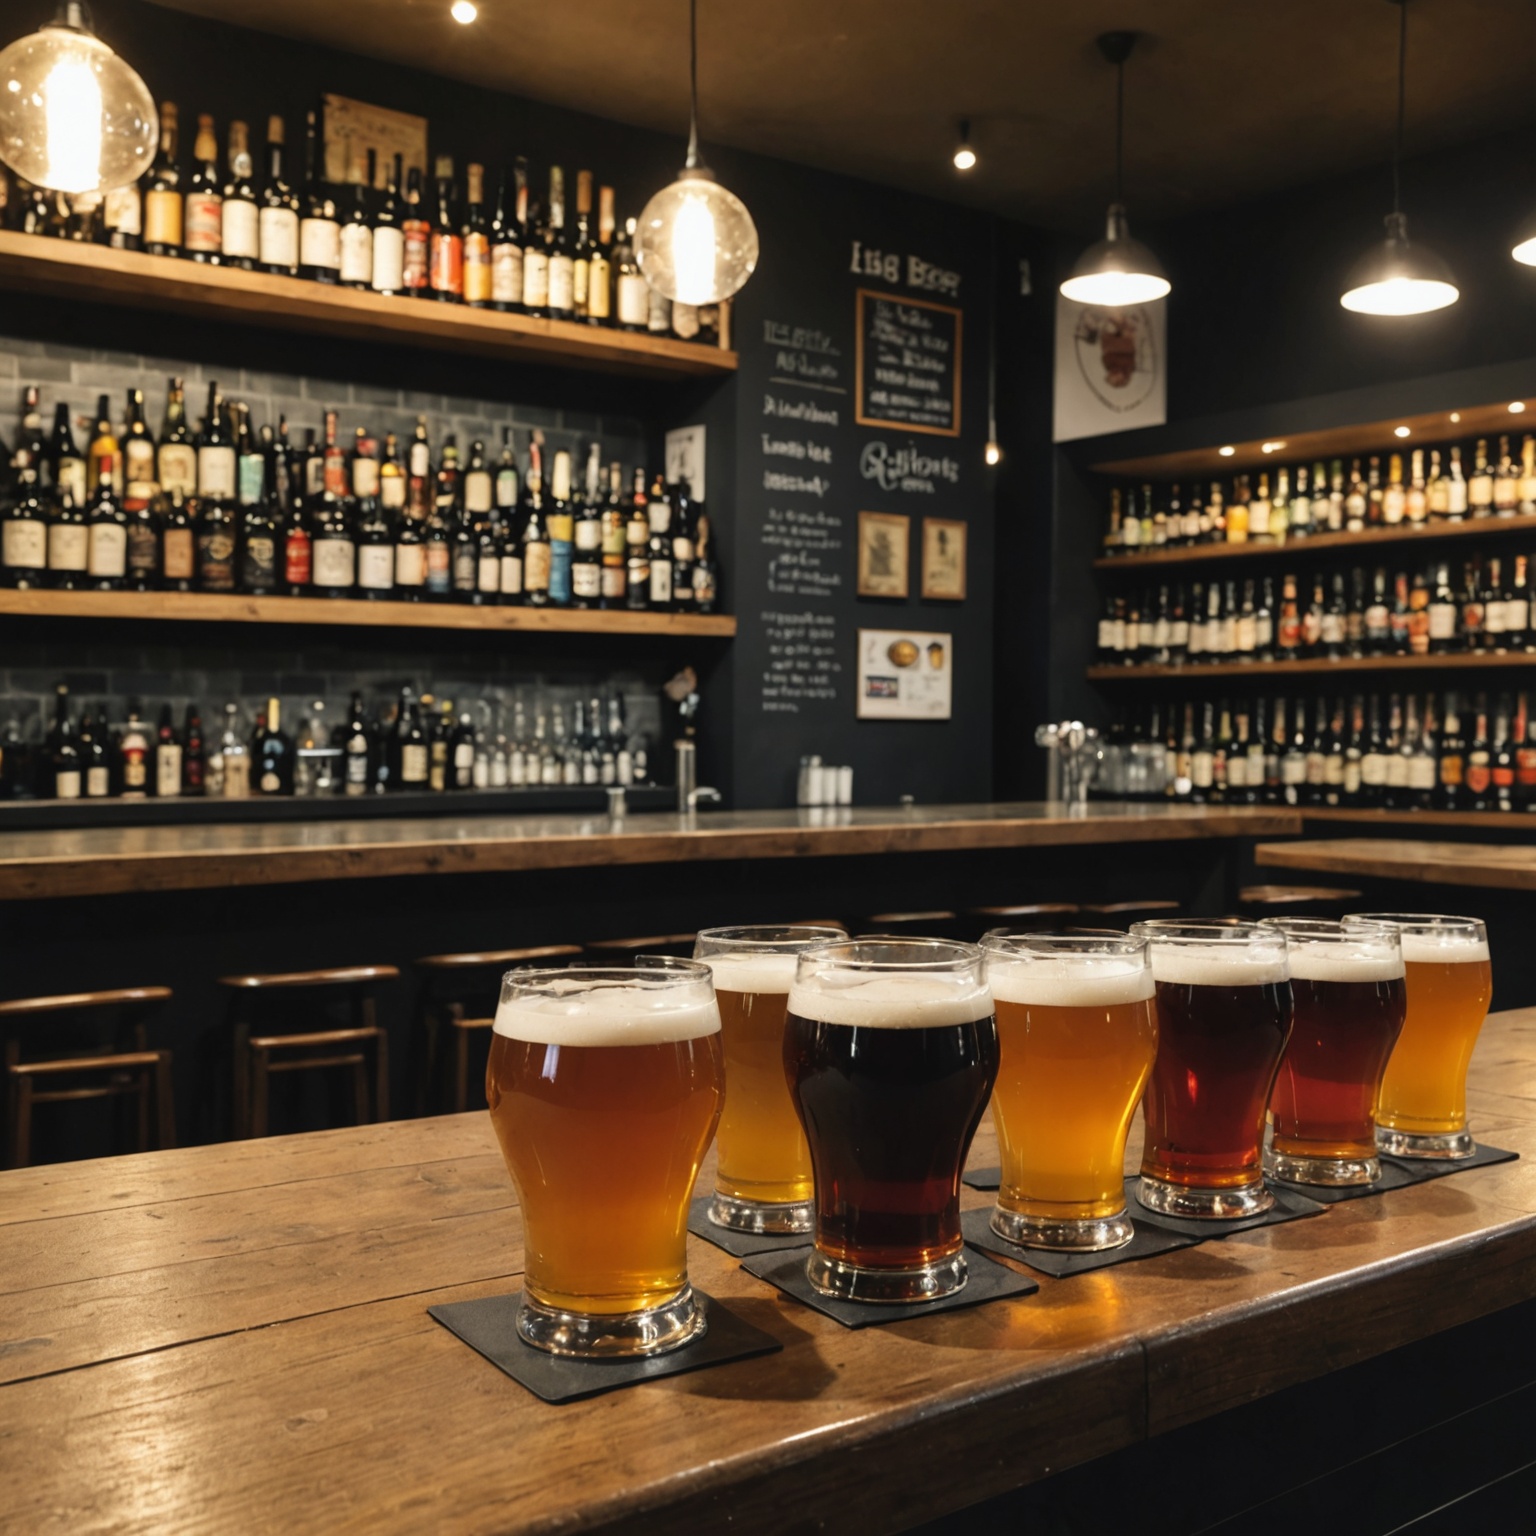 Top Bars à Bière à Tarbes : Guide Ultime pour une Expérience Mousse inoubliable